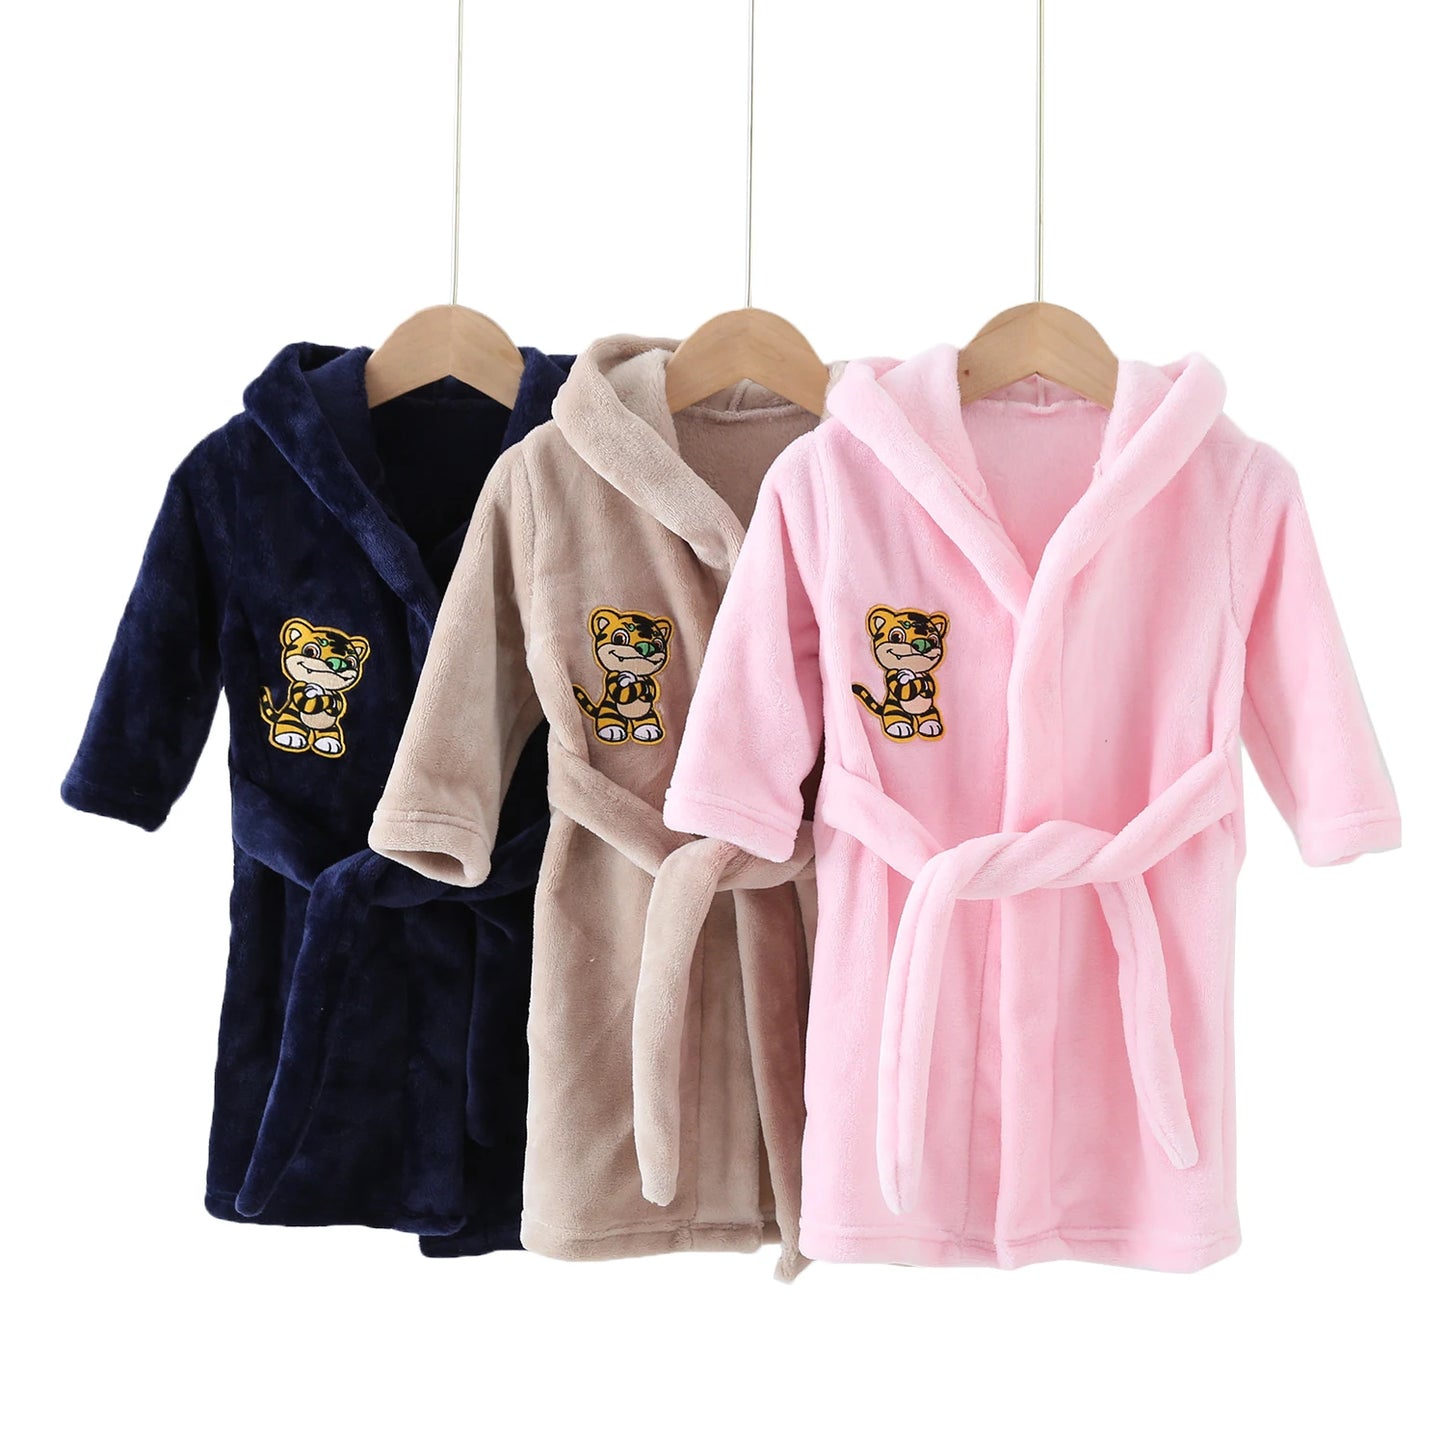 BABY HOUSE - Automne Filles Garçons Pyjamas Enfants Vêtements Filles Garçons Robes Hiver Vêtements De Nuit Peignoir Printemps Enfants À Capuche Peignoir Filles Vêtements